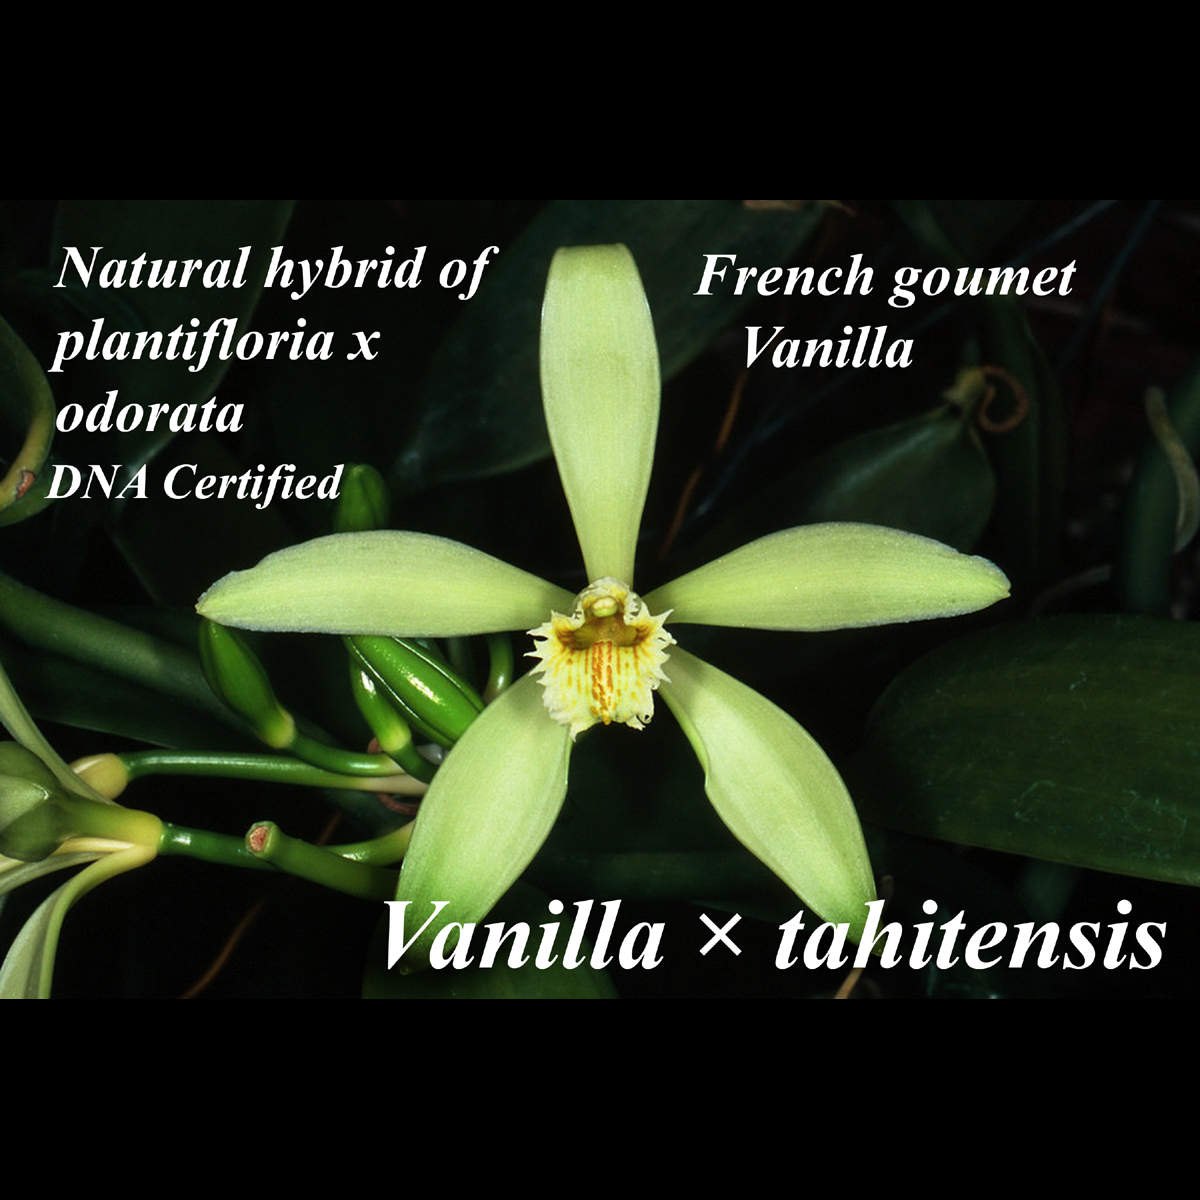 Vanilla × tahitensis